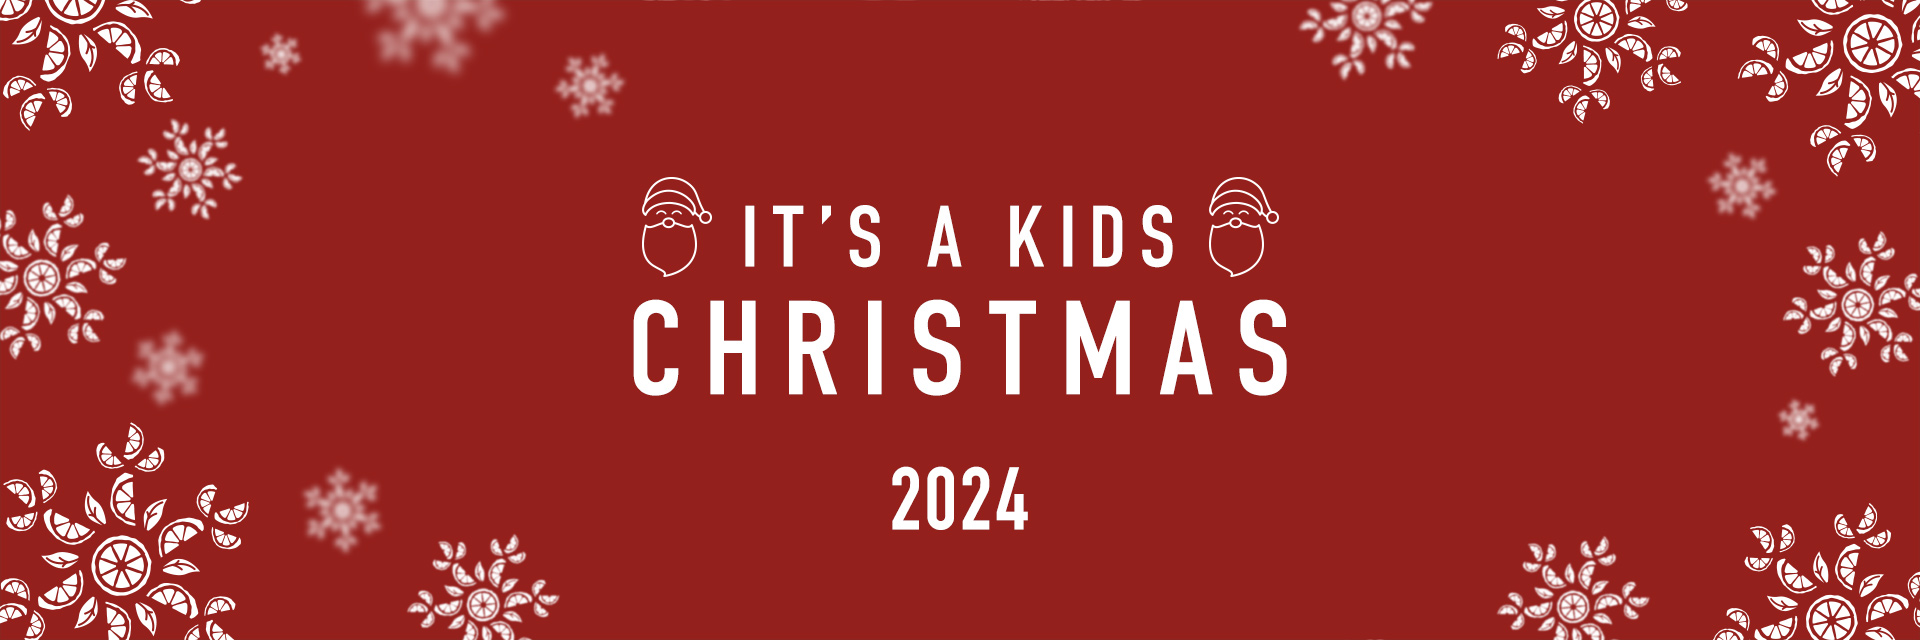 Kids Christmas Menu 2024 at The Beacon